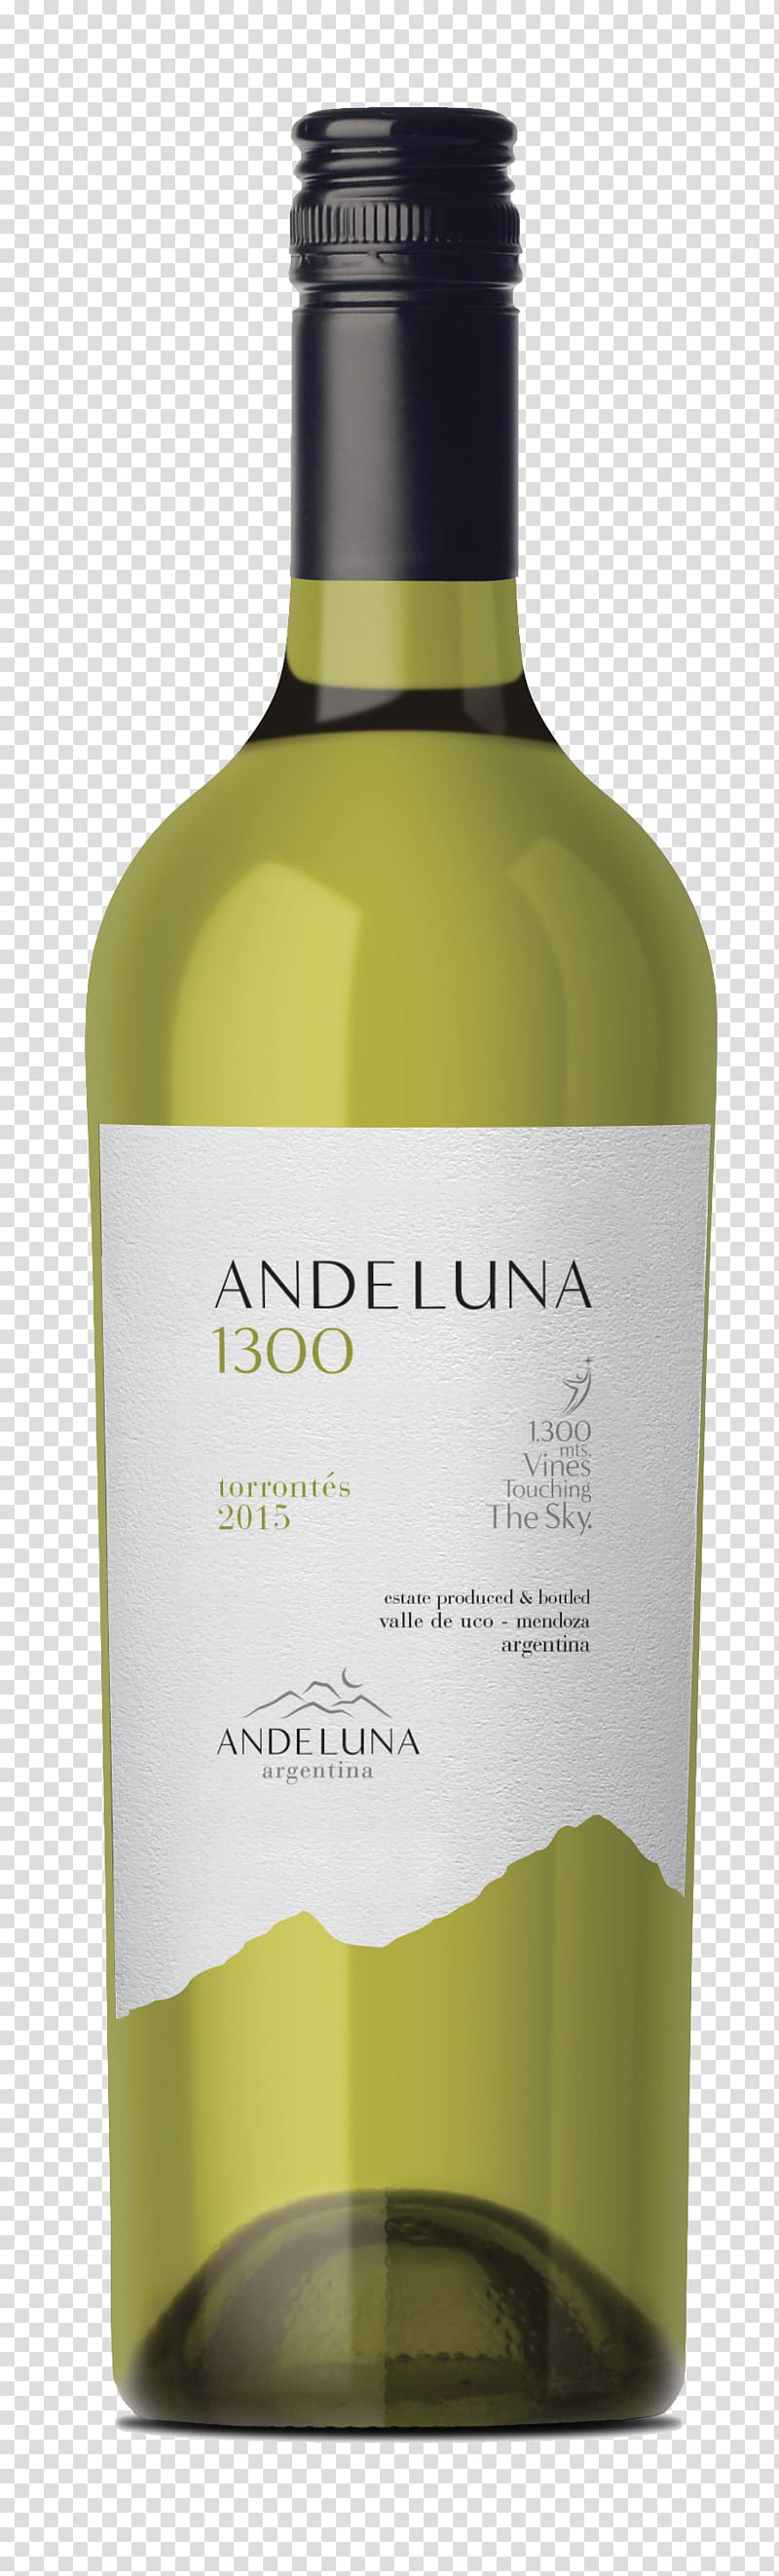 White wine Bodega Andeluna Torrontés Malbec, shelf talker transparent background PNG clipart